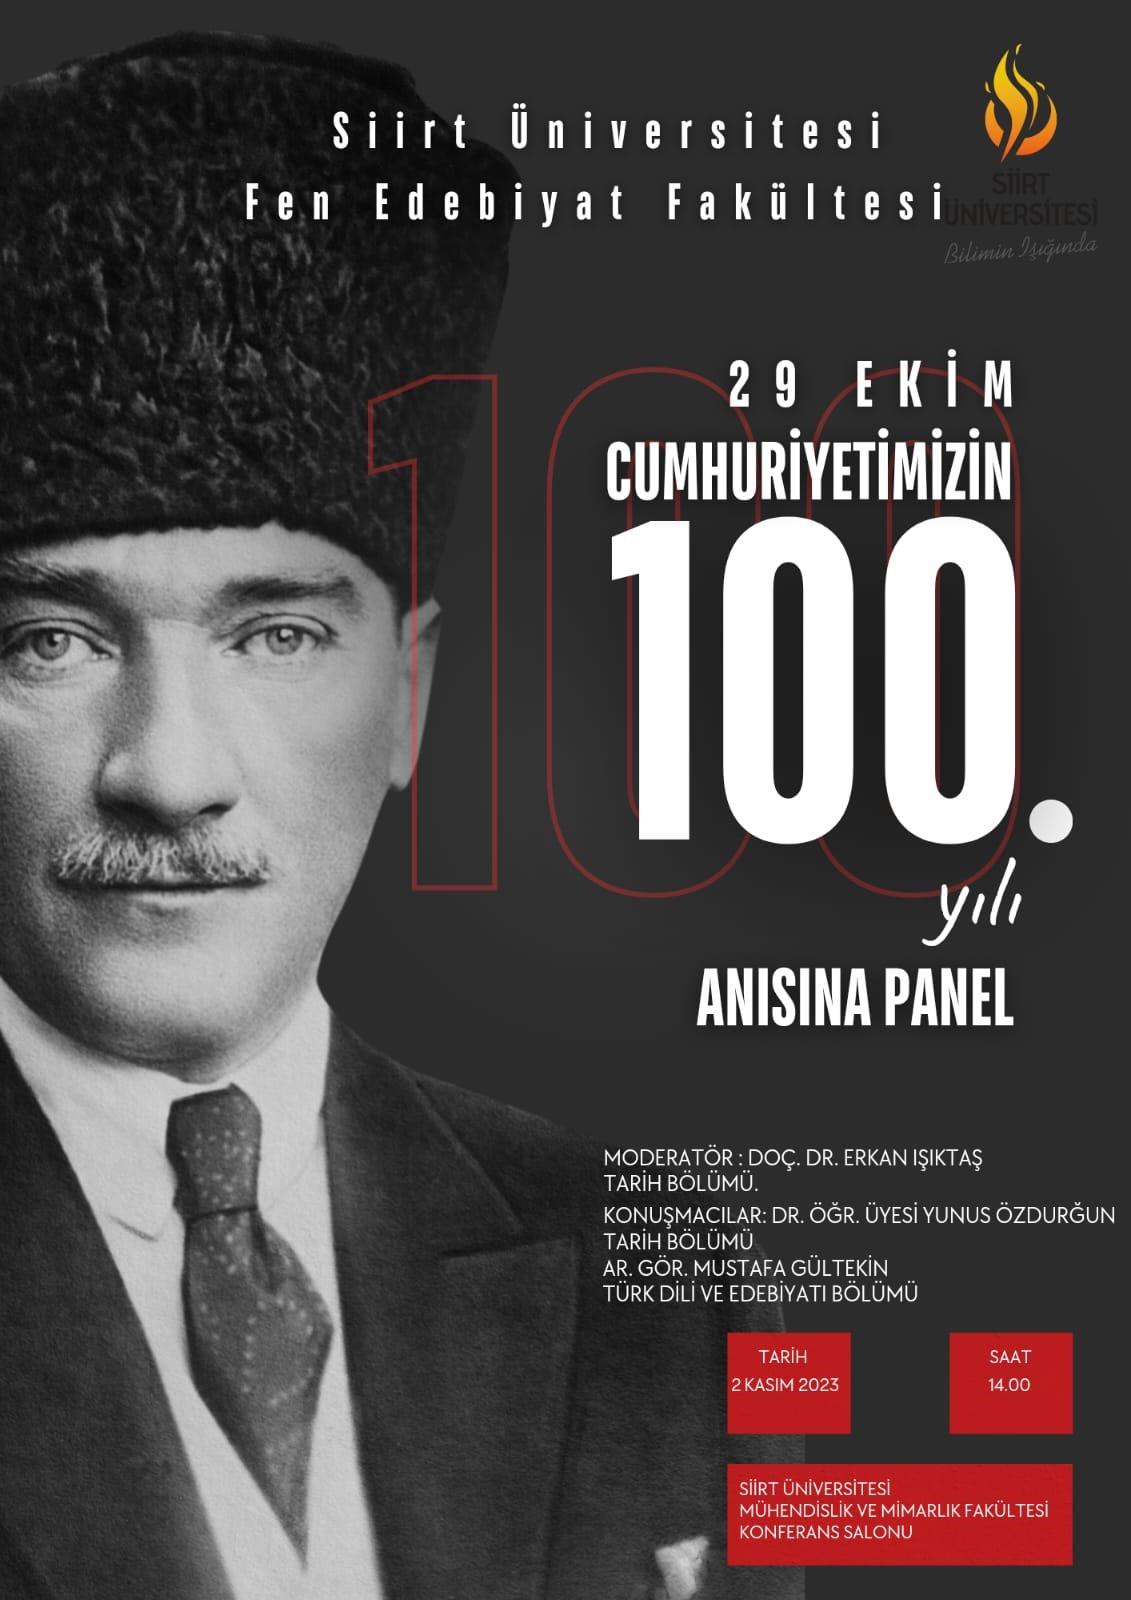 29 Ekim Cumhuriyetimizin 100. Yılı Anısına Panel